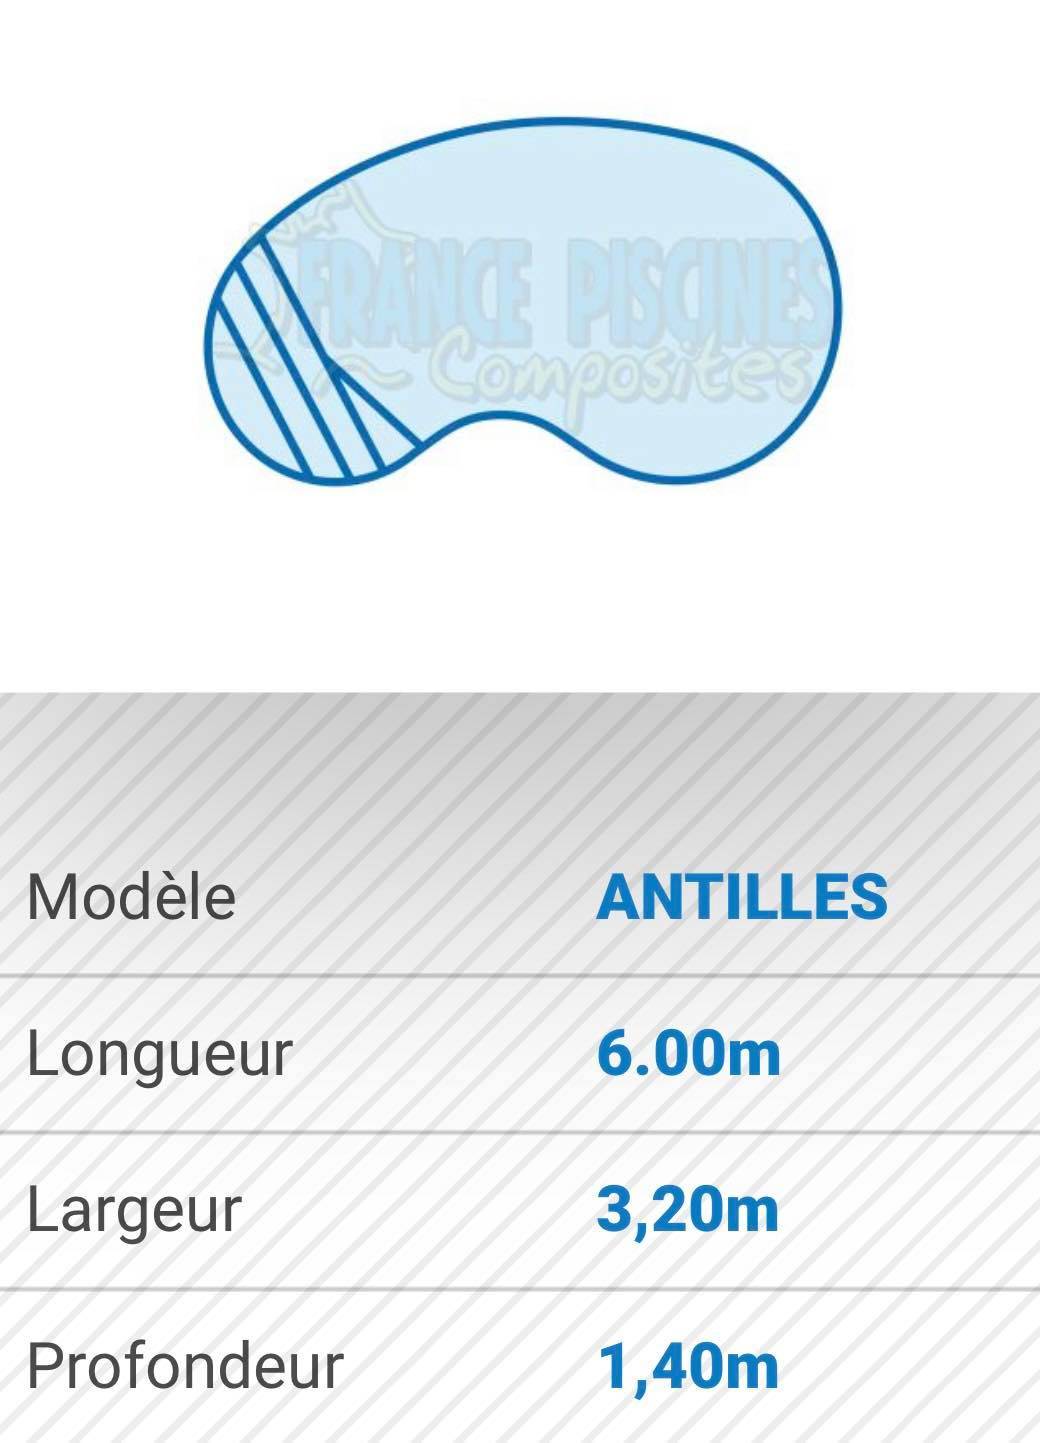 Piscine forme arrondie design modèle ANTILLES - France Piscines Composite - FERRE PISCINES à Peypin